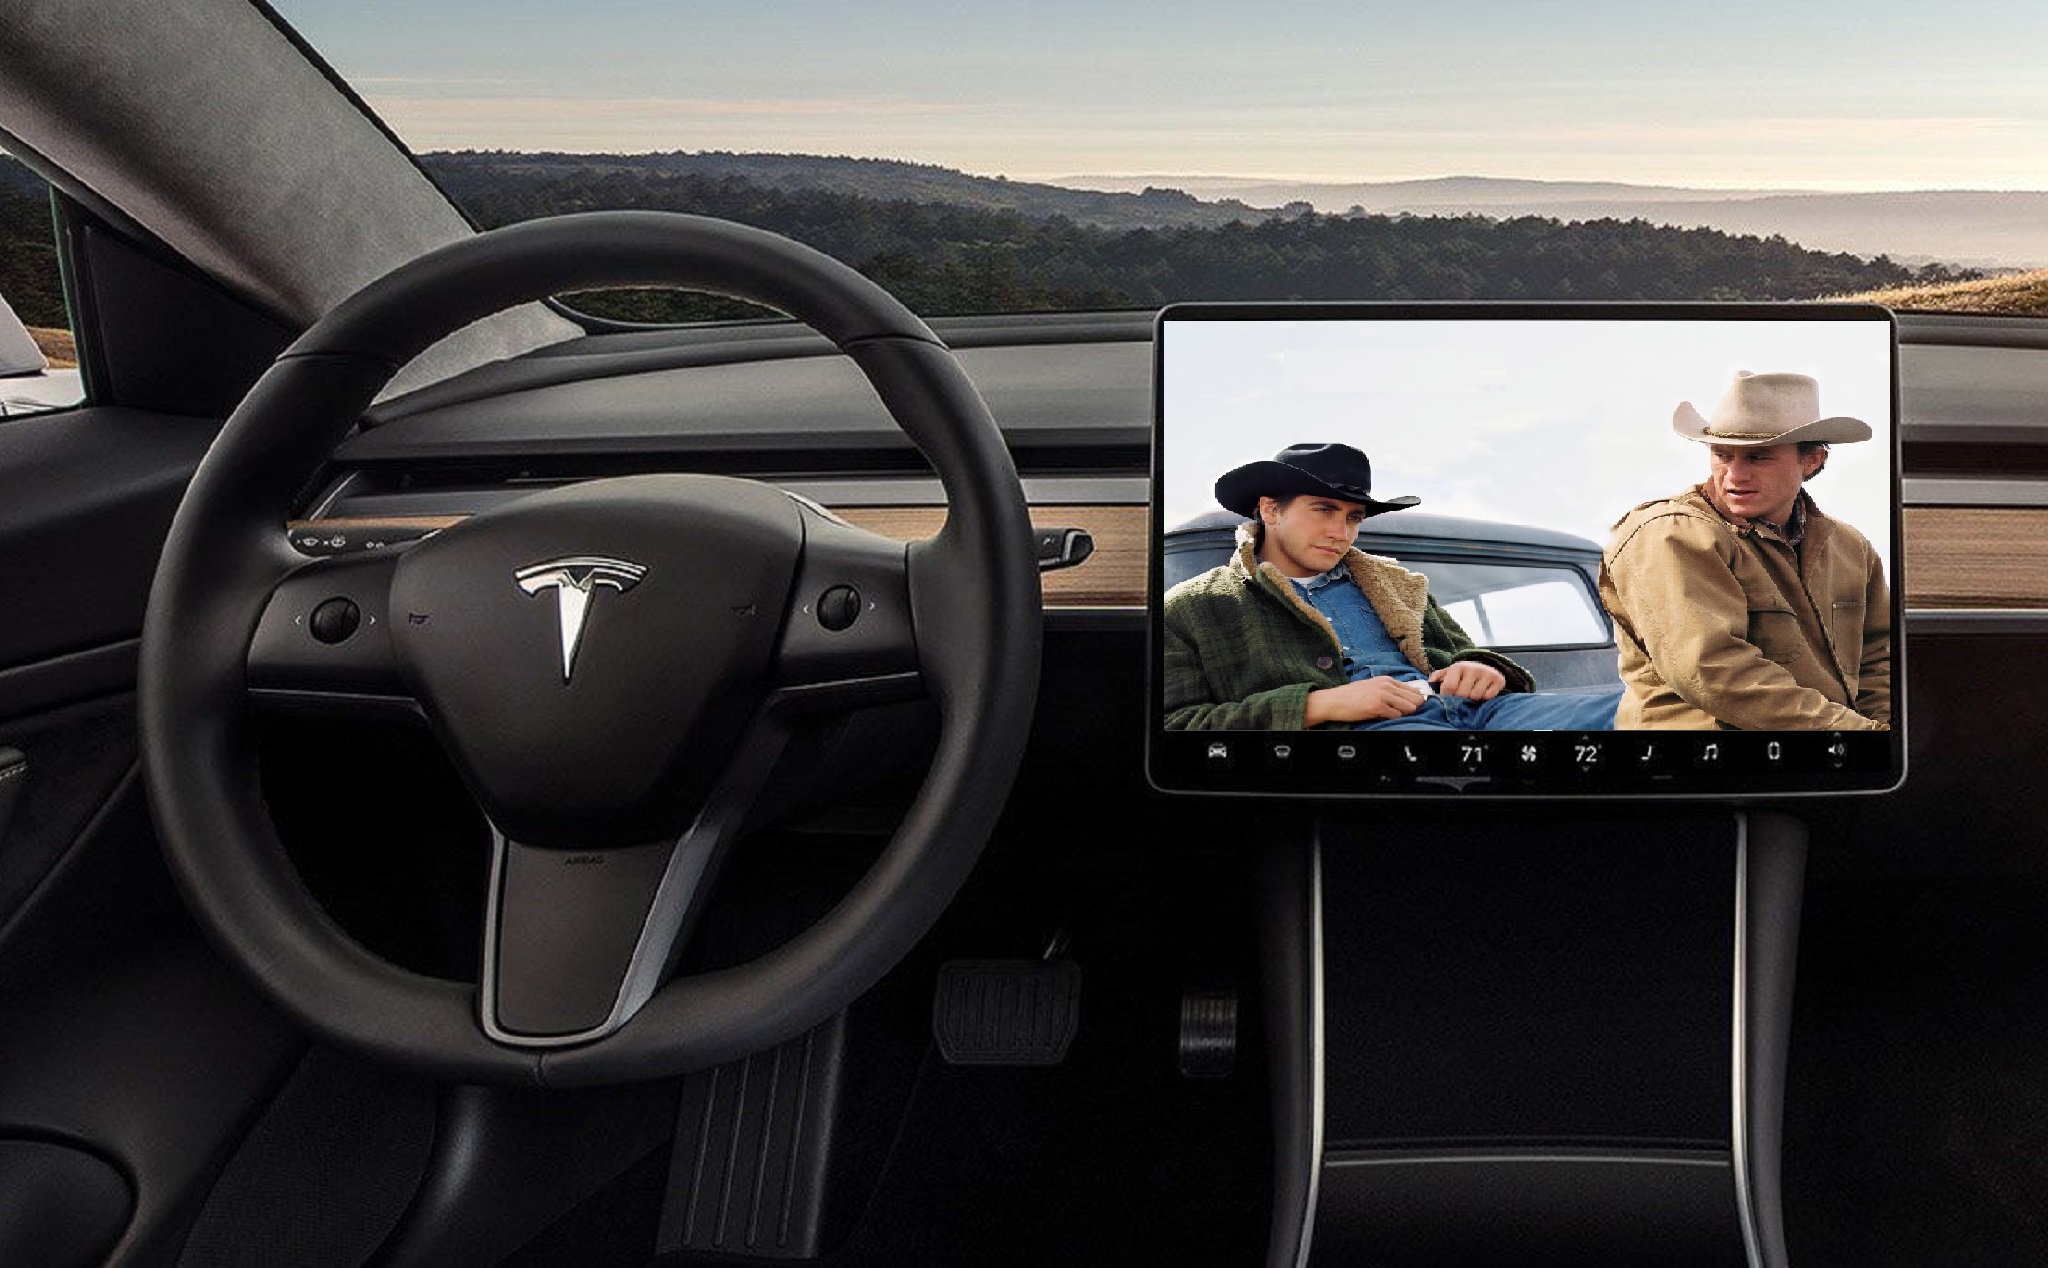 Xe hơi Tesla sắp xem được phim khi đang sạc pin